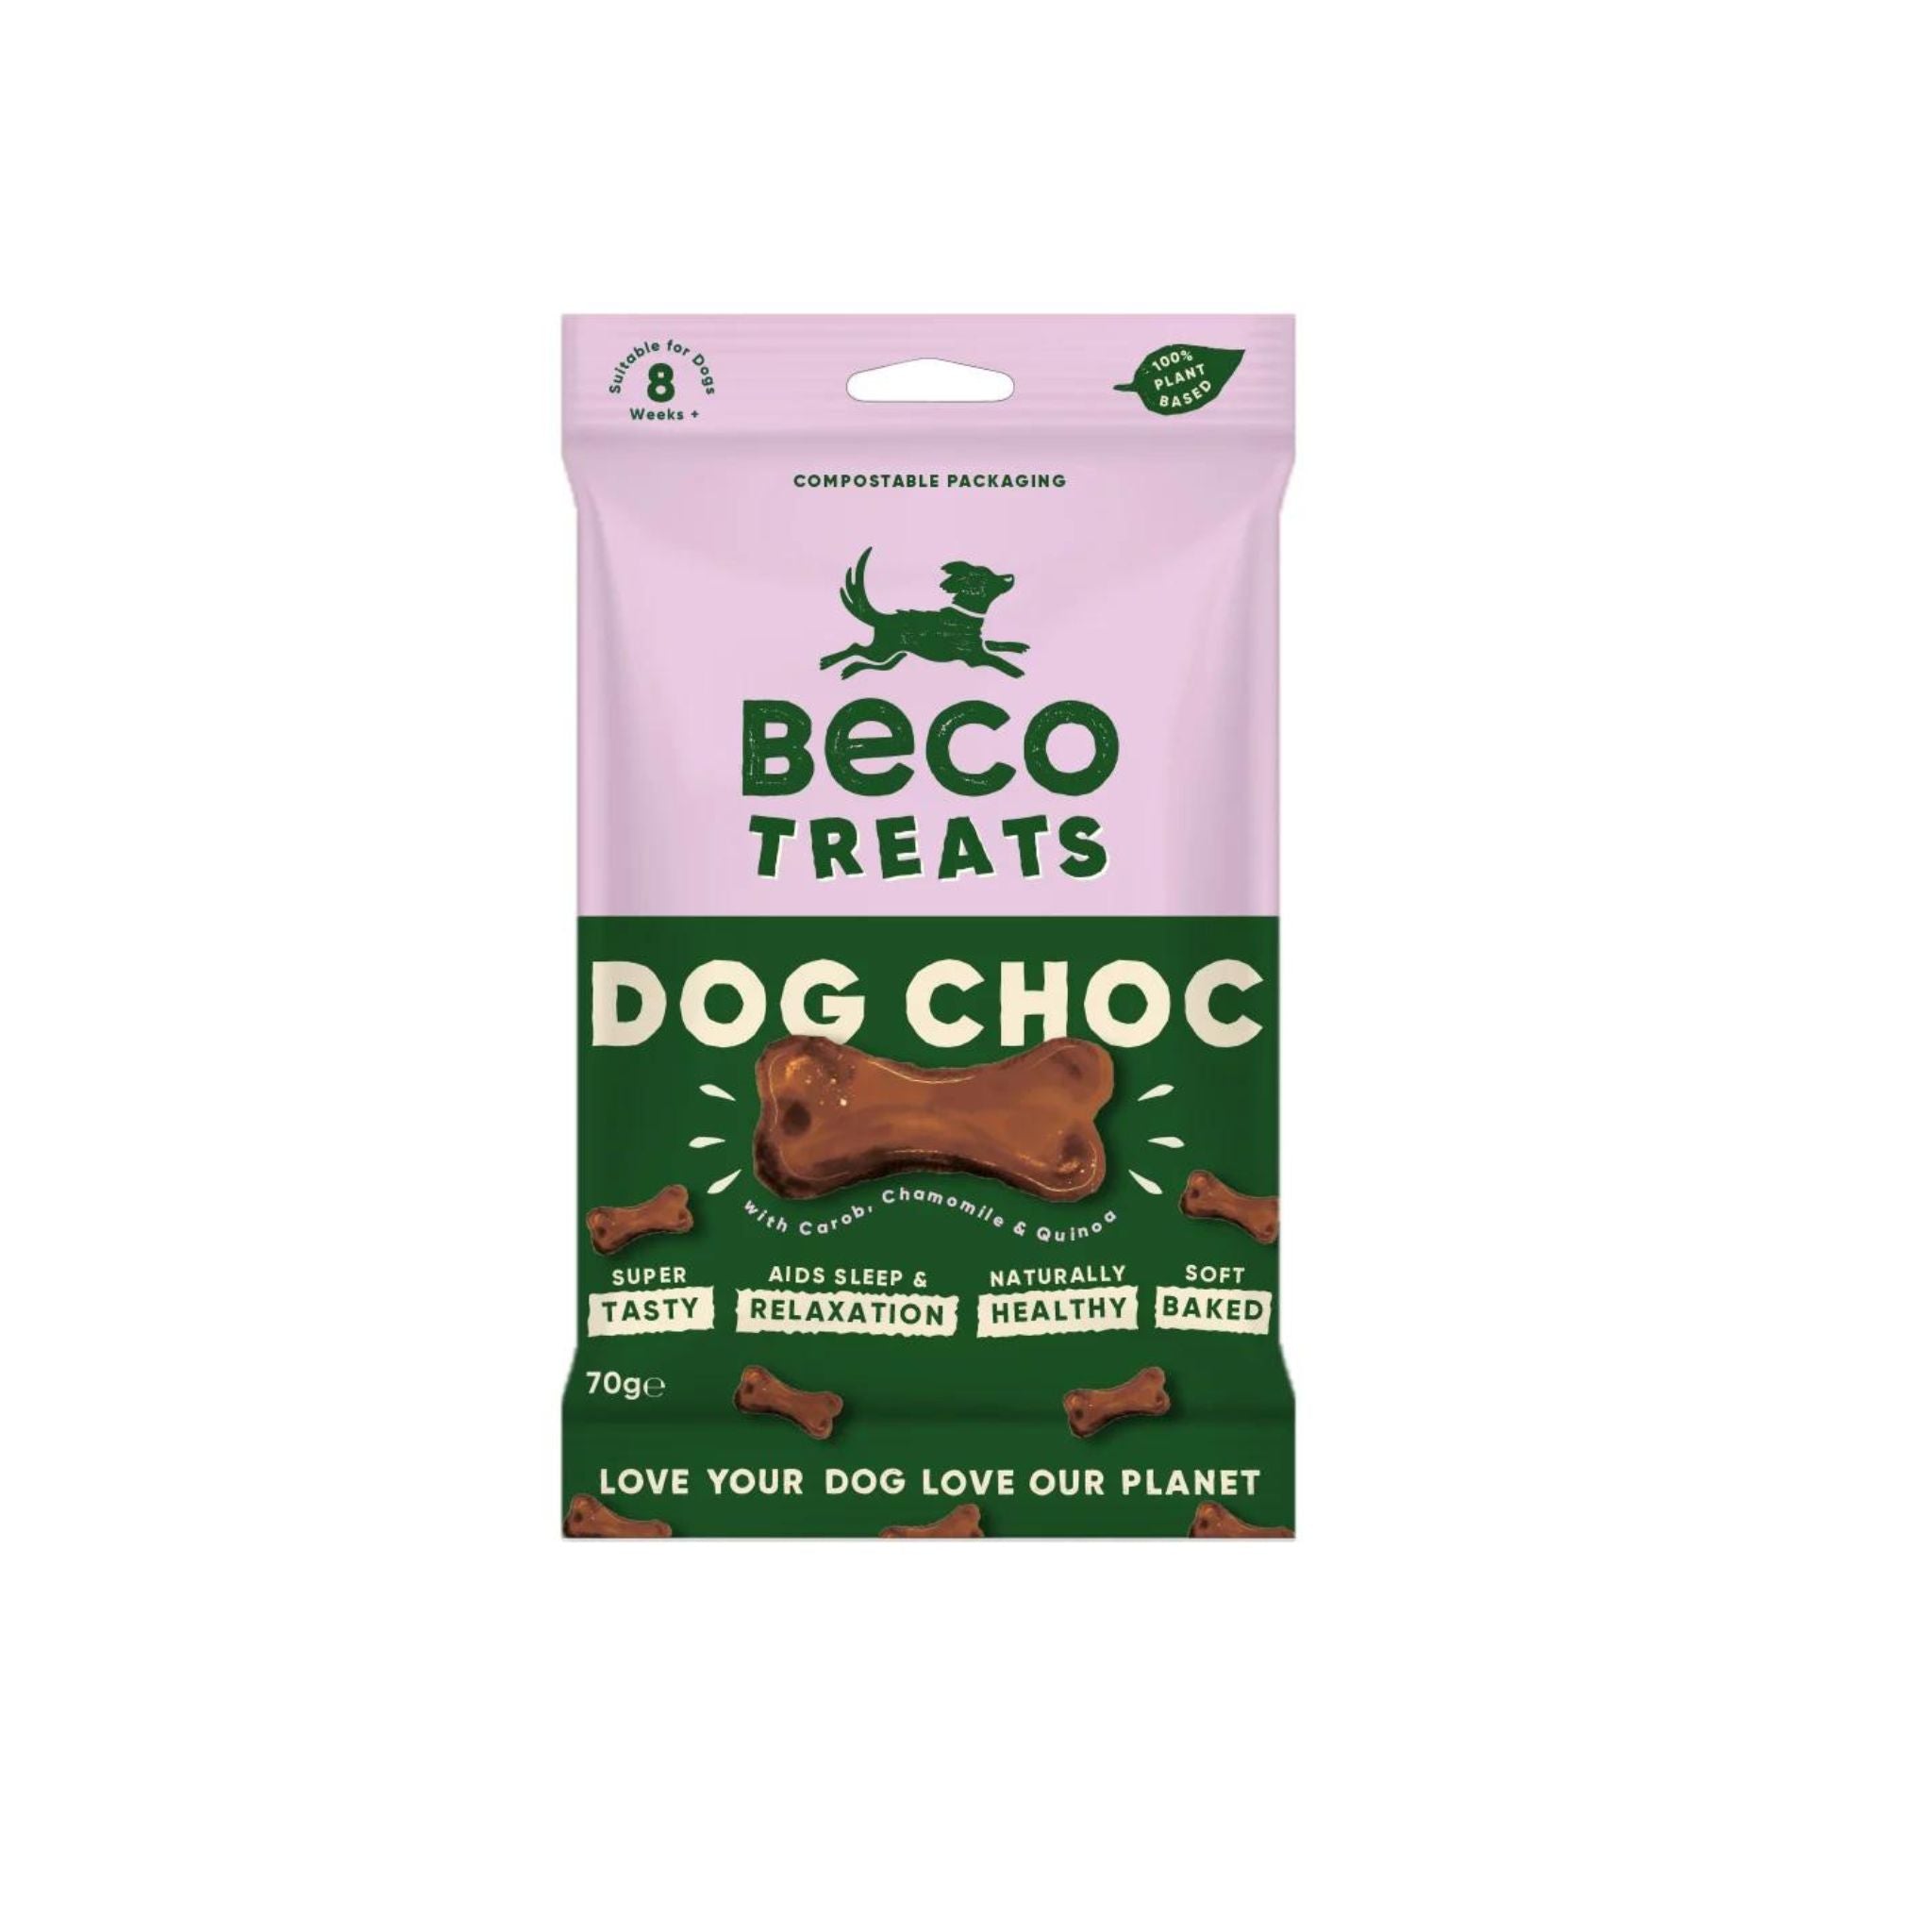 Vegane Hundeleckerli Beco Pets / Dog Choc Leckerlis bei Fairtails